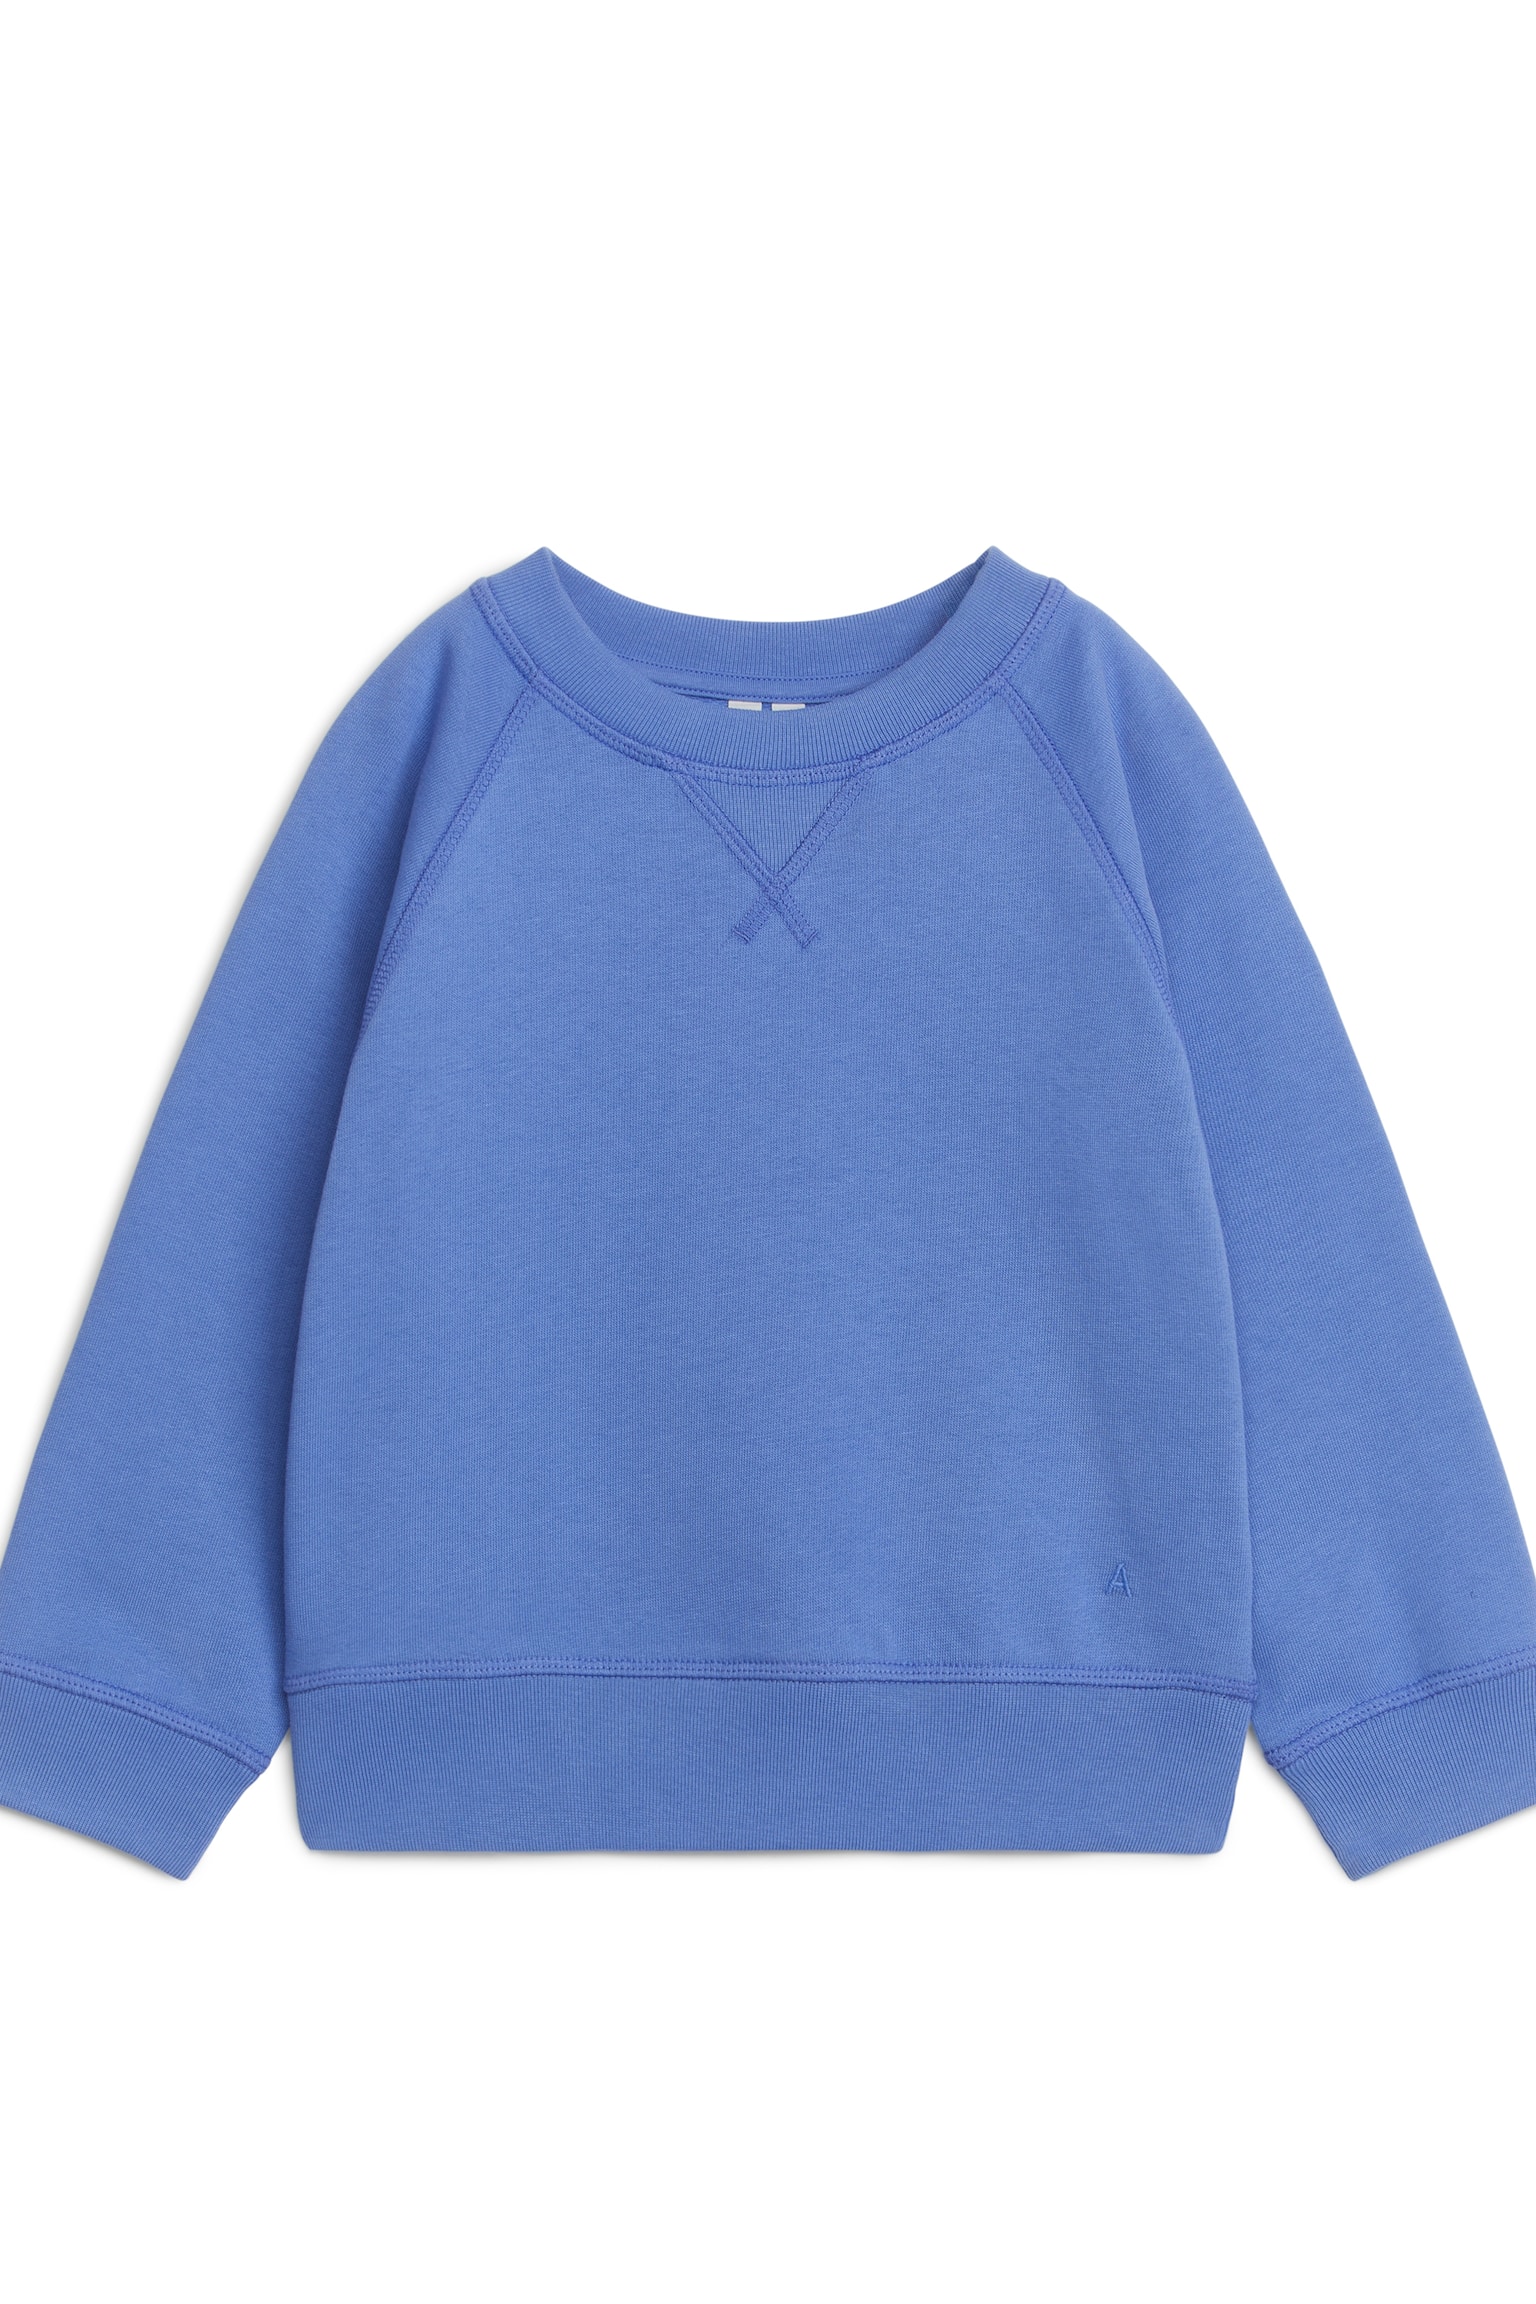 Sweatshirt aus Baumwolle - Blau/Taubenblau/Pfirsich/Rosa/Beige/Graumeliert/Dunkelblau/Orange/Blau/Grün - 1